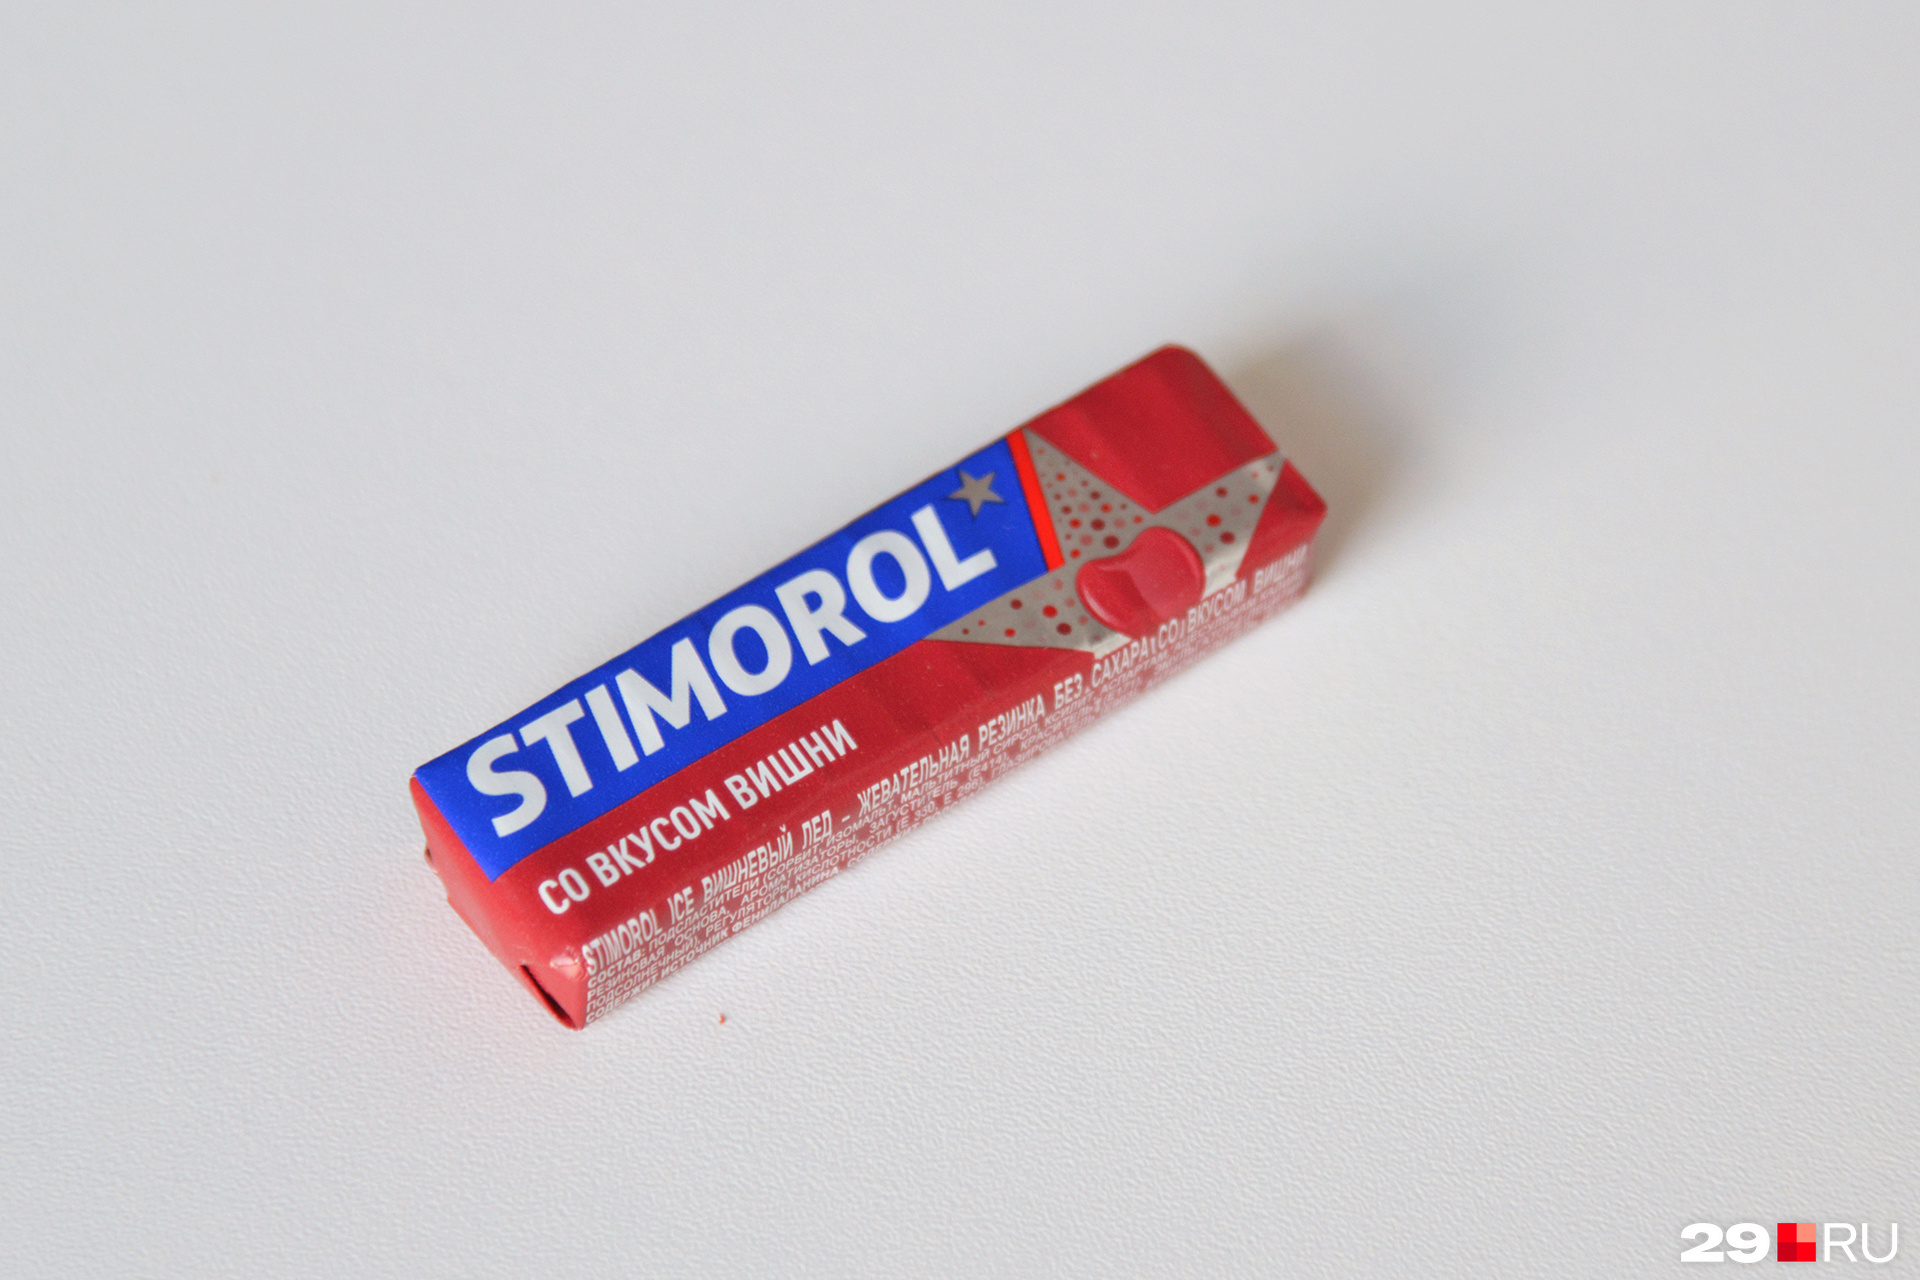 Stimorol — ещё один продукт времени, который недавно вернулся на прилавки